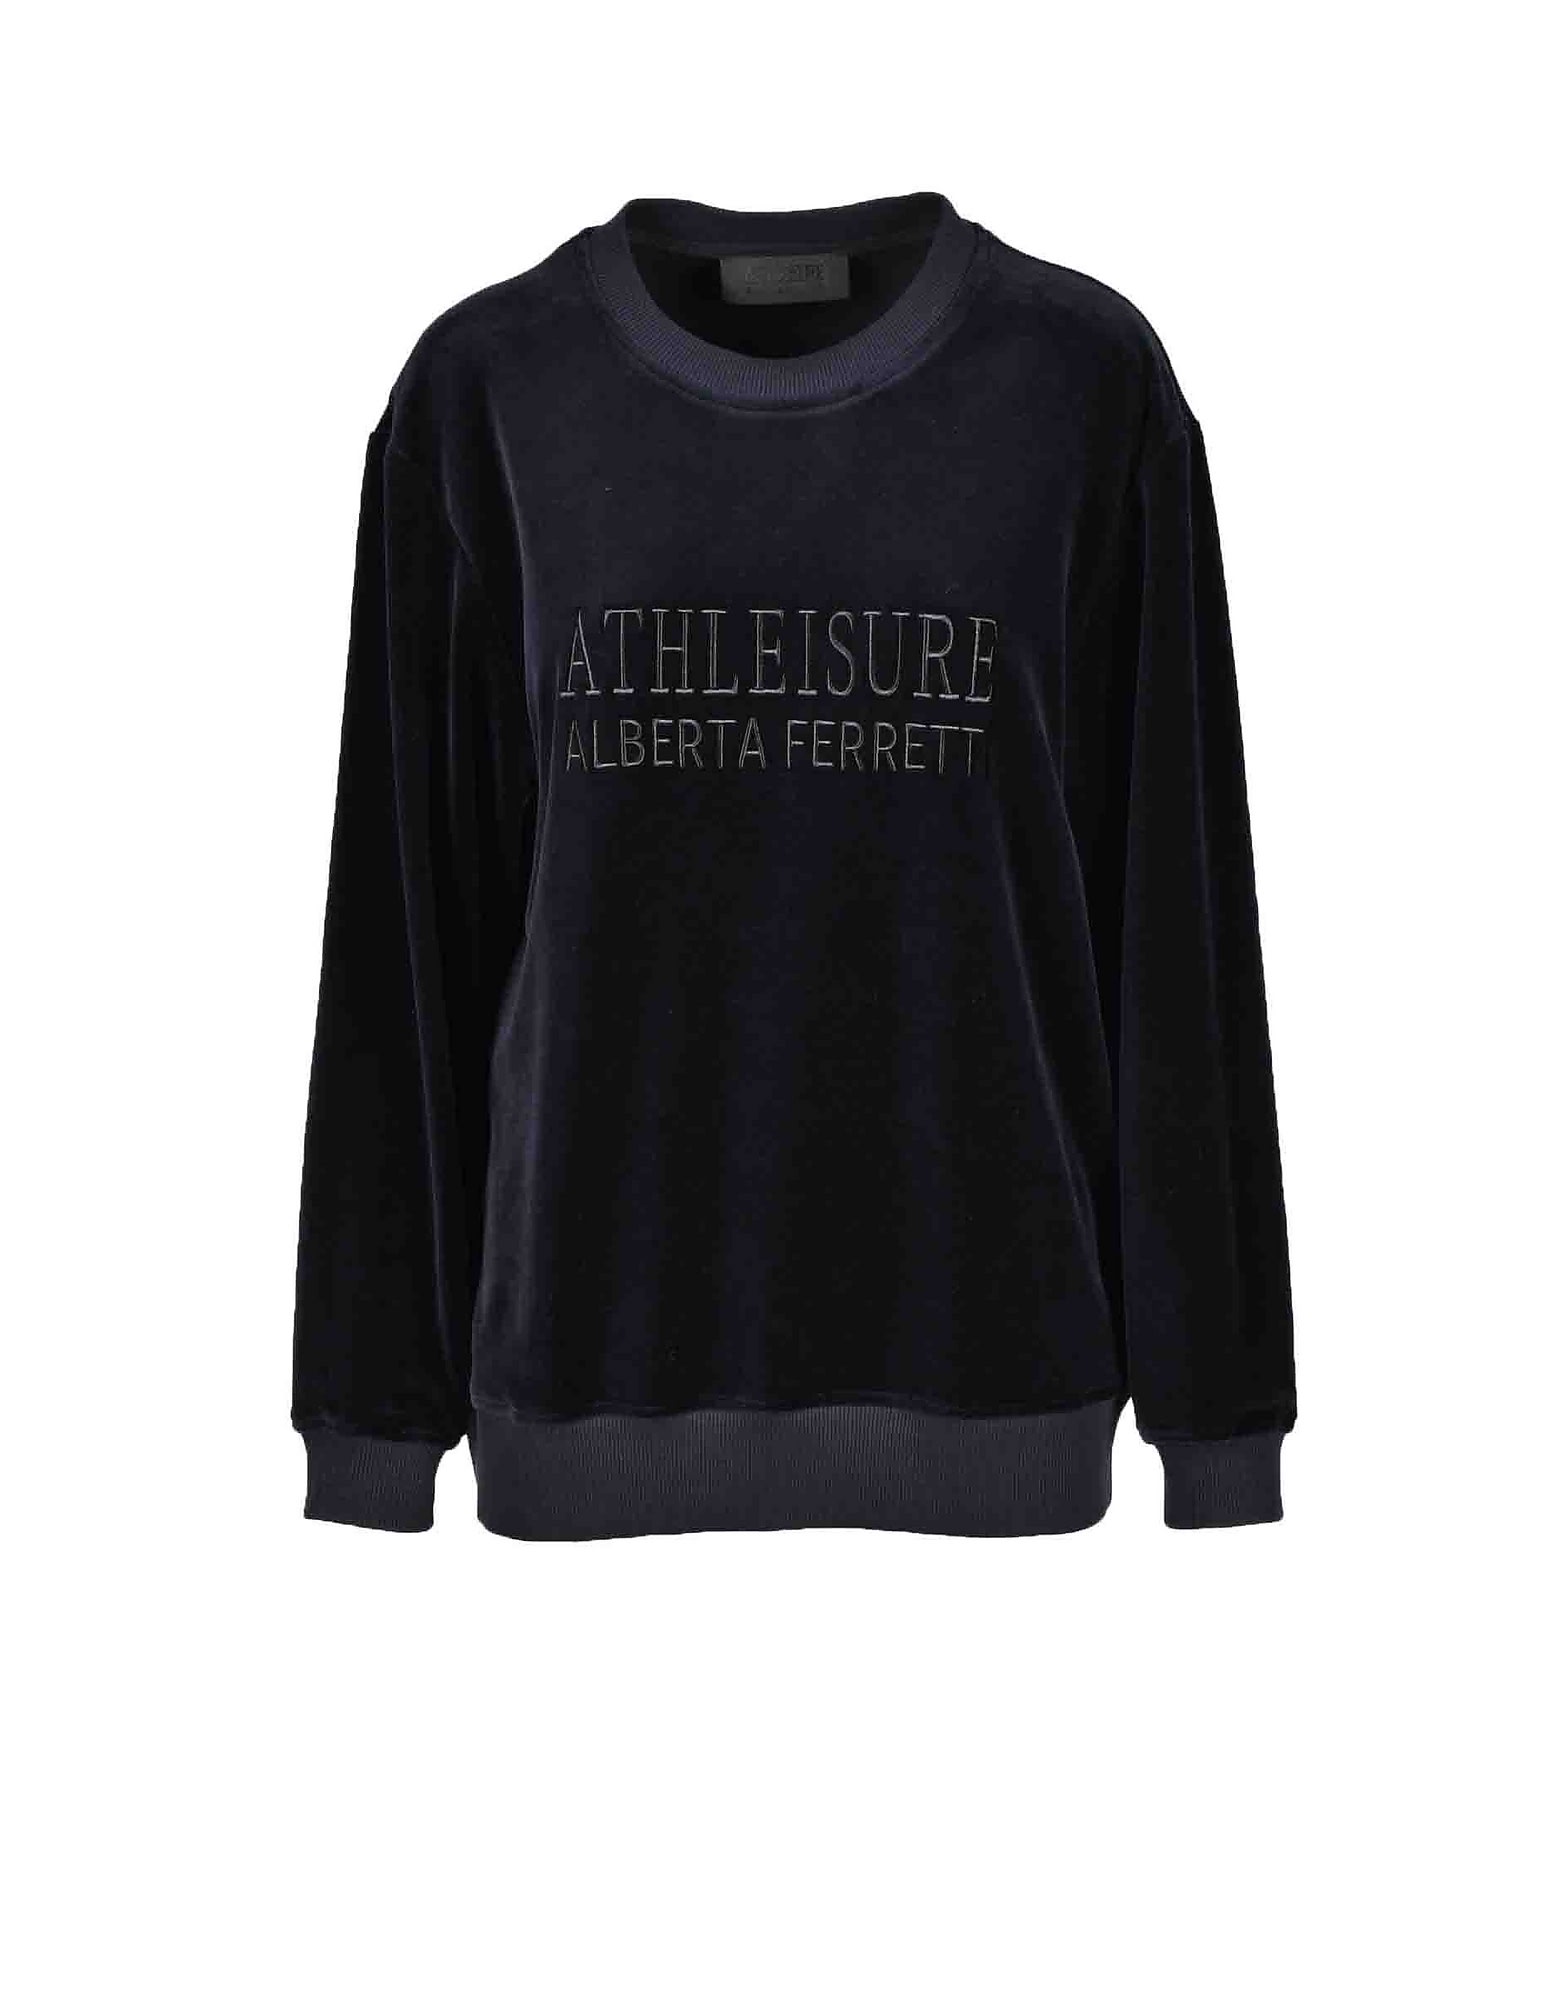 Alberta Ferretti Womens Black Sweatshirt